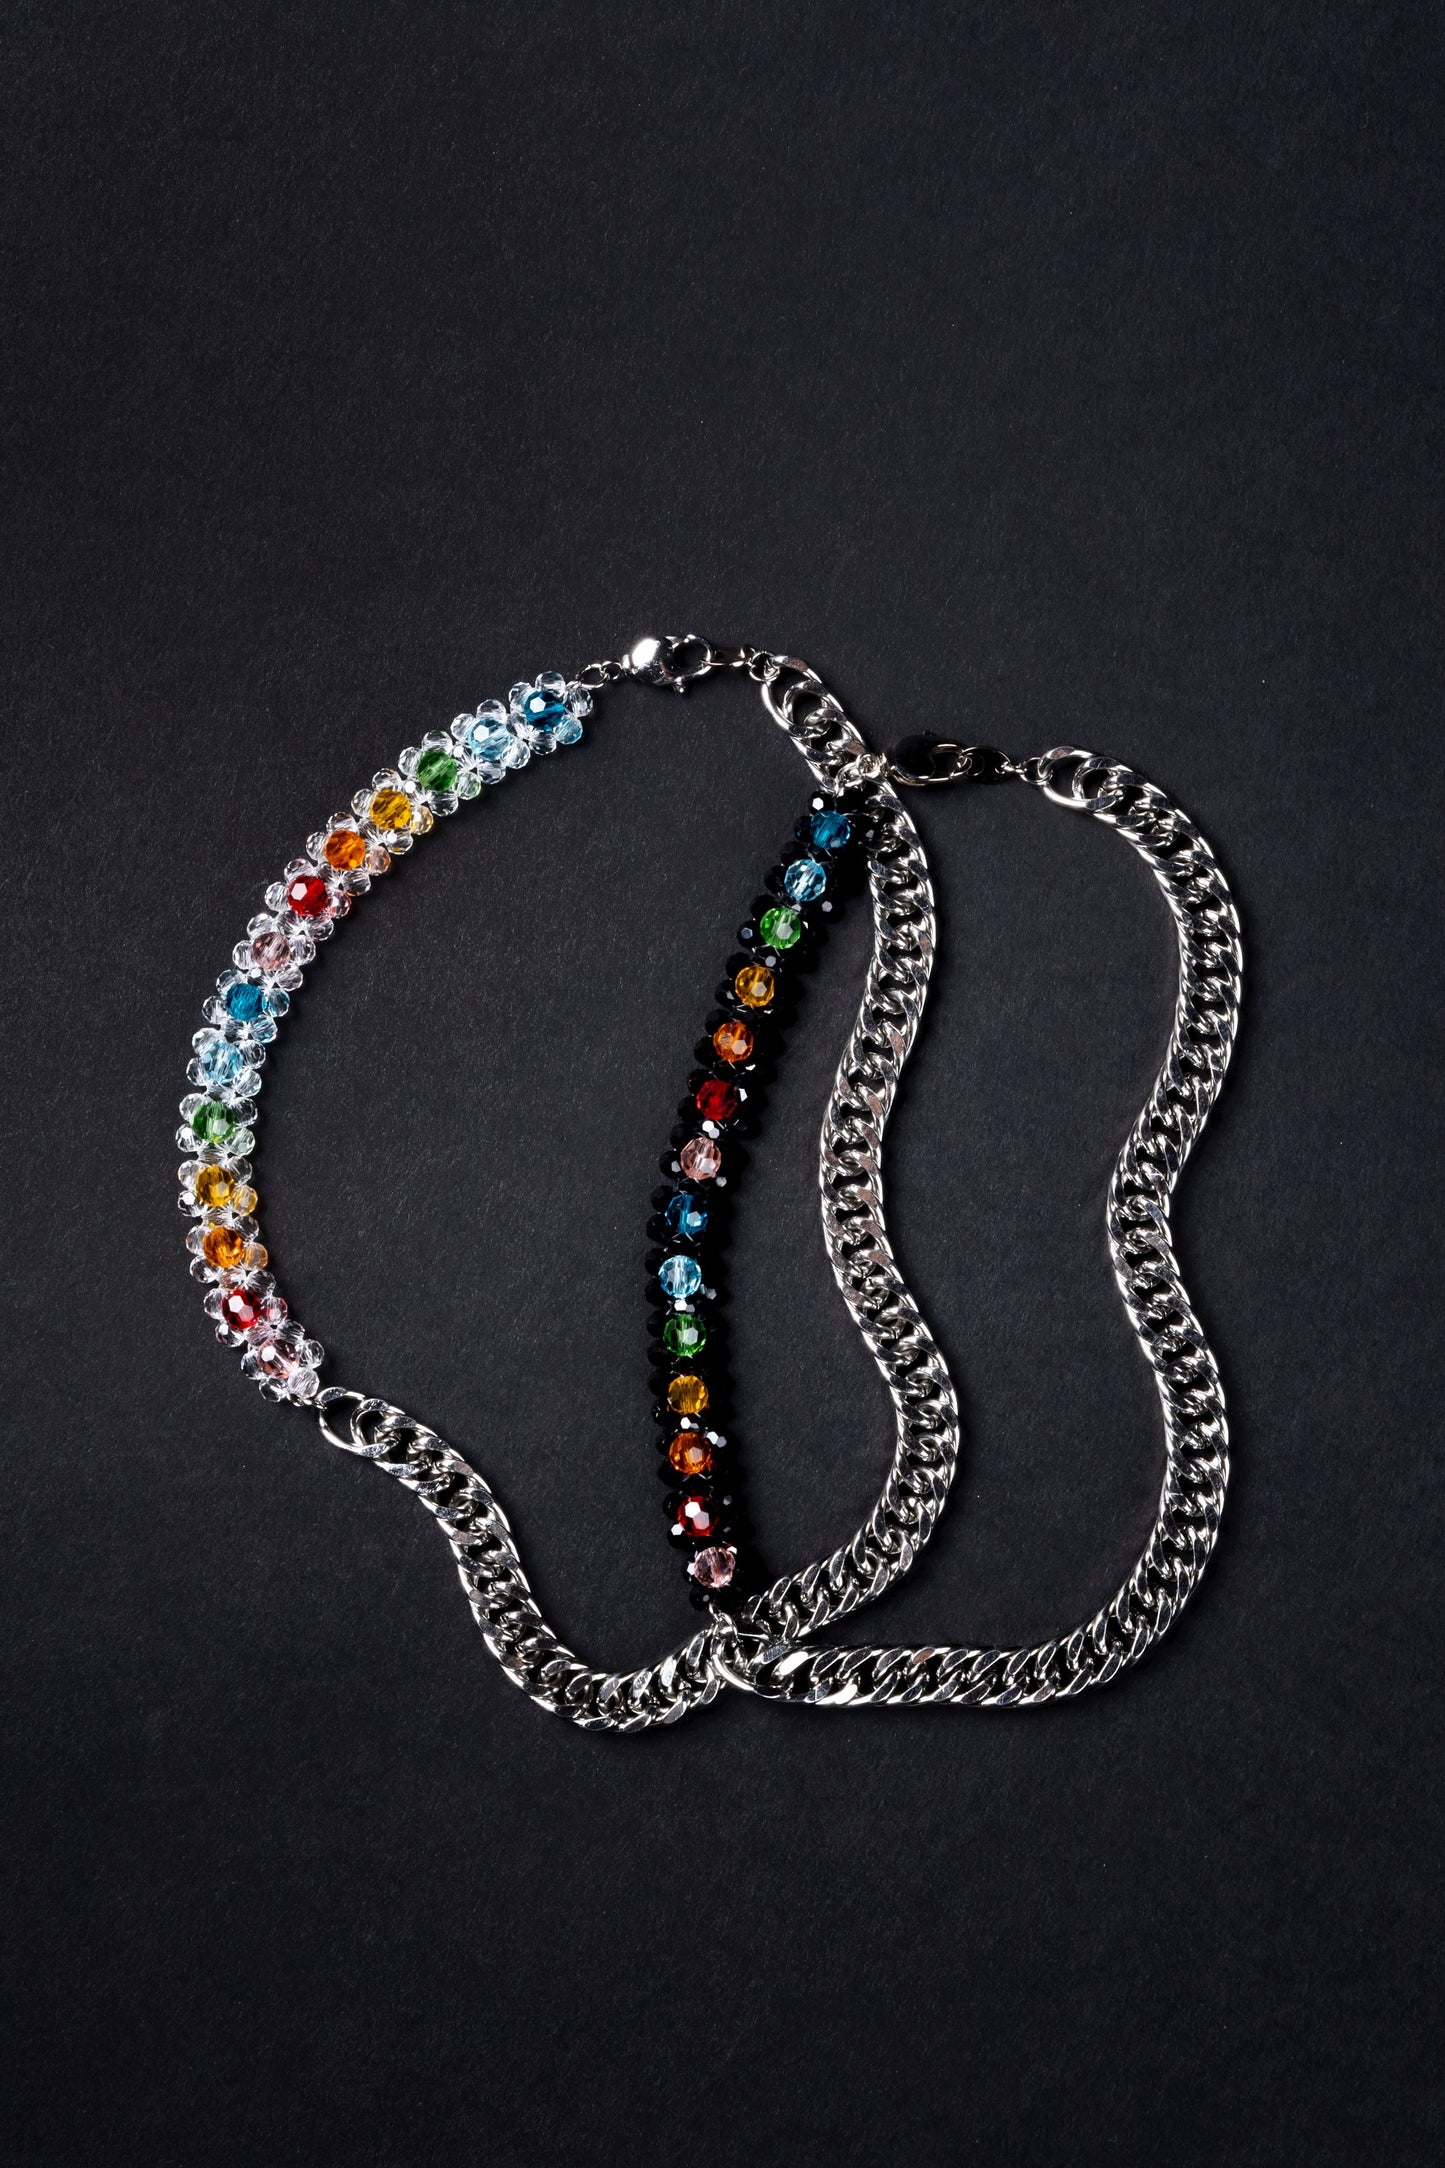 Crystal Bead Rainbow Beaded Chain Necklace Clear